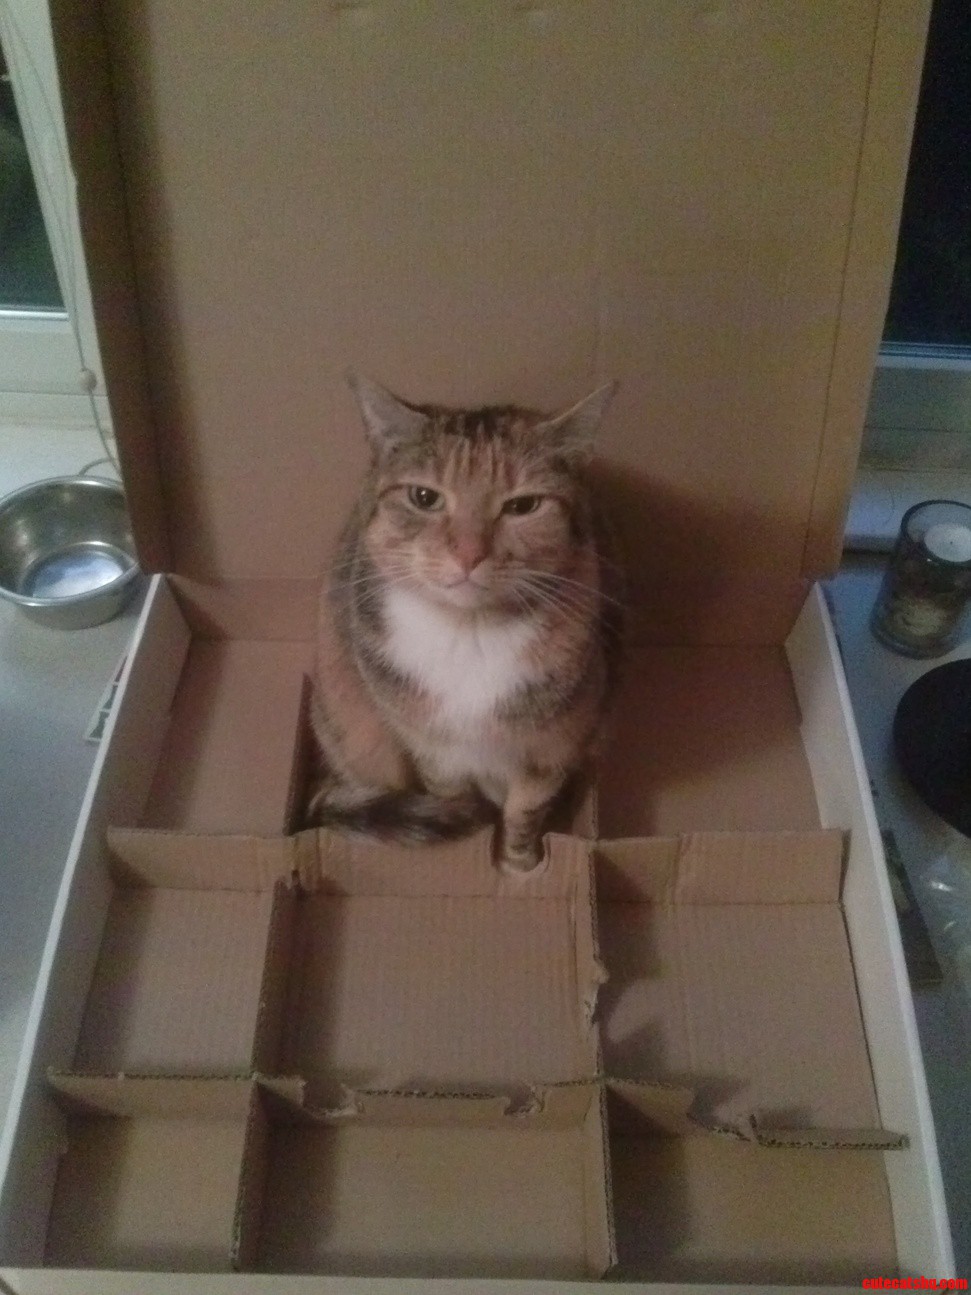 Ultimate cat trap if i fits i sits.